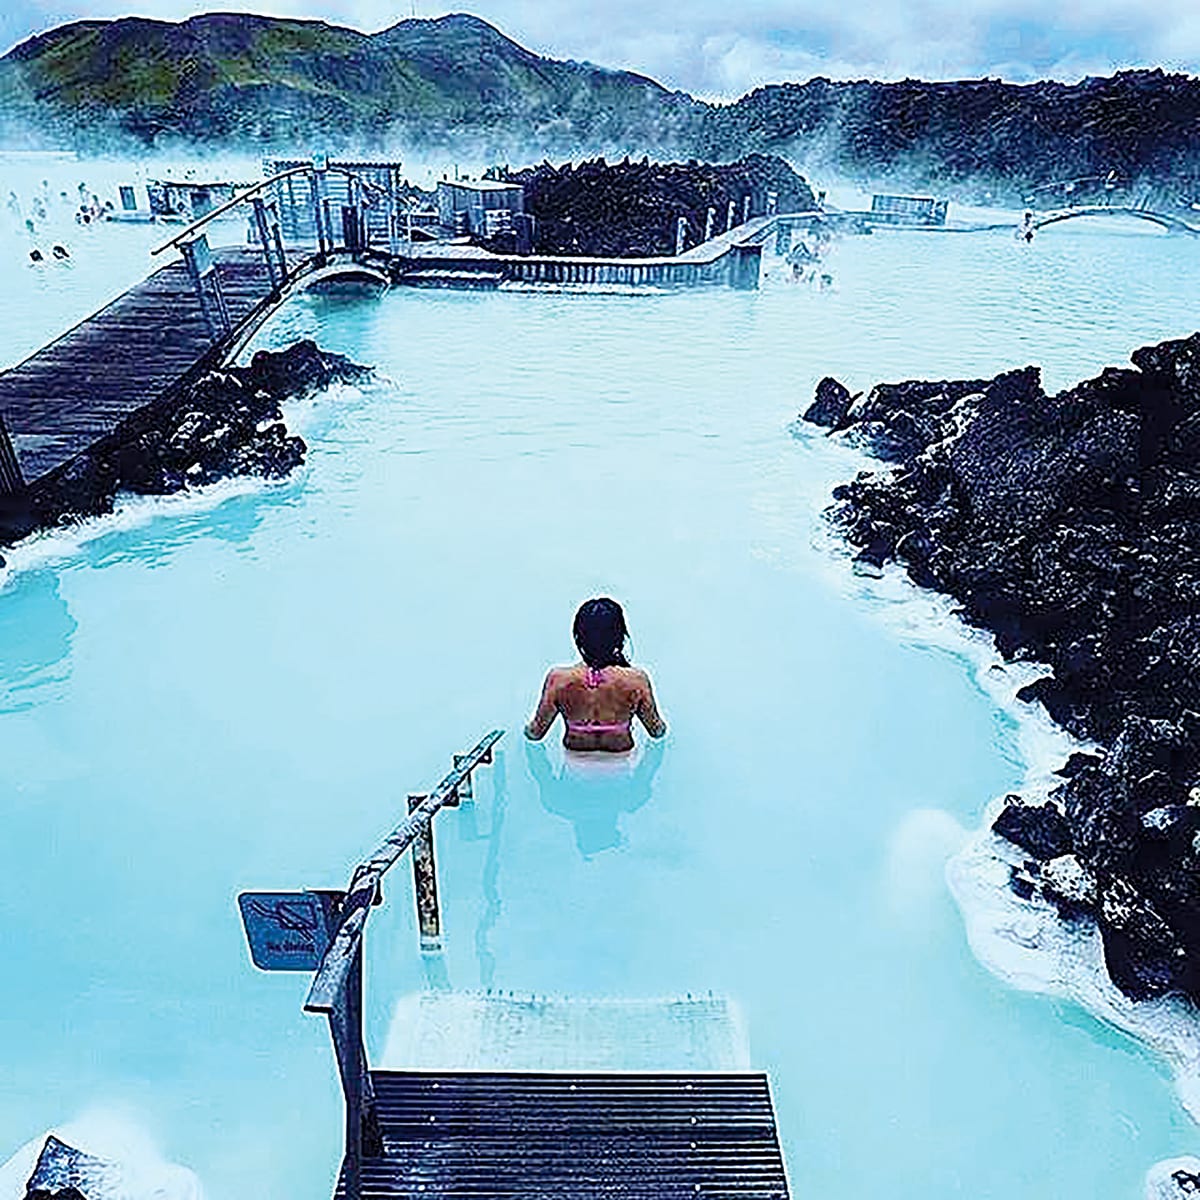 Blue-Lagoon-Geothermal-Spa-in-Iceland.jpg